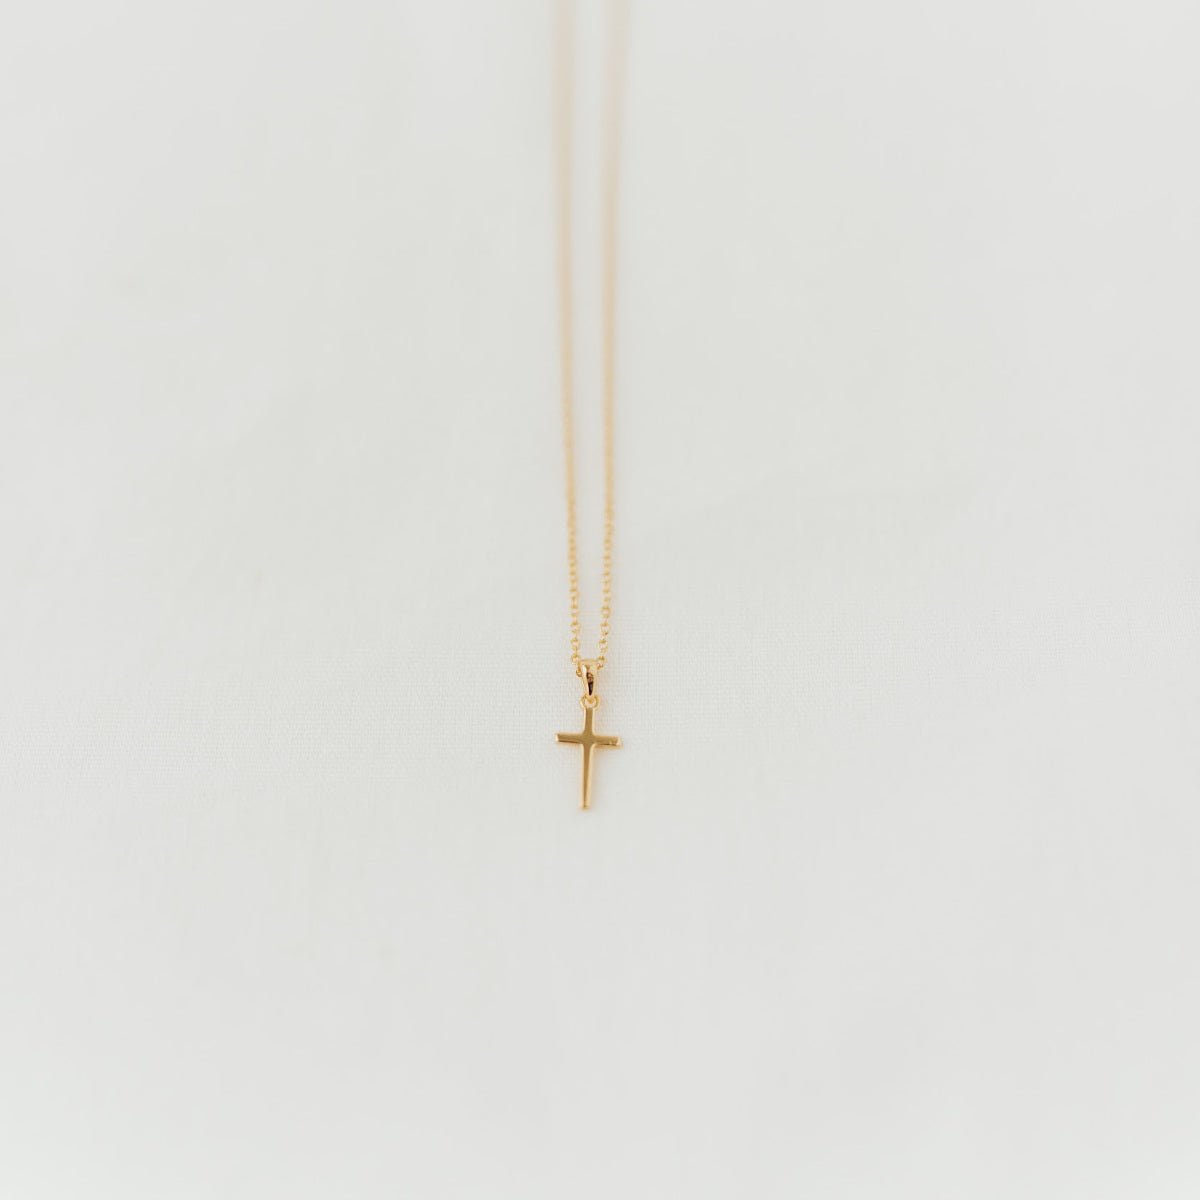 Alive Necklace (Gold Vermeil) | Kette für €54.99 von So Loved Manufacture